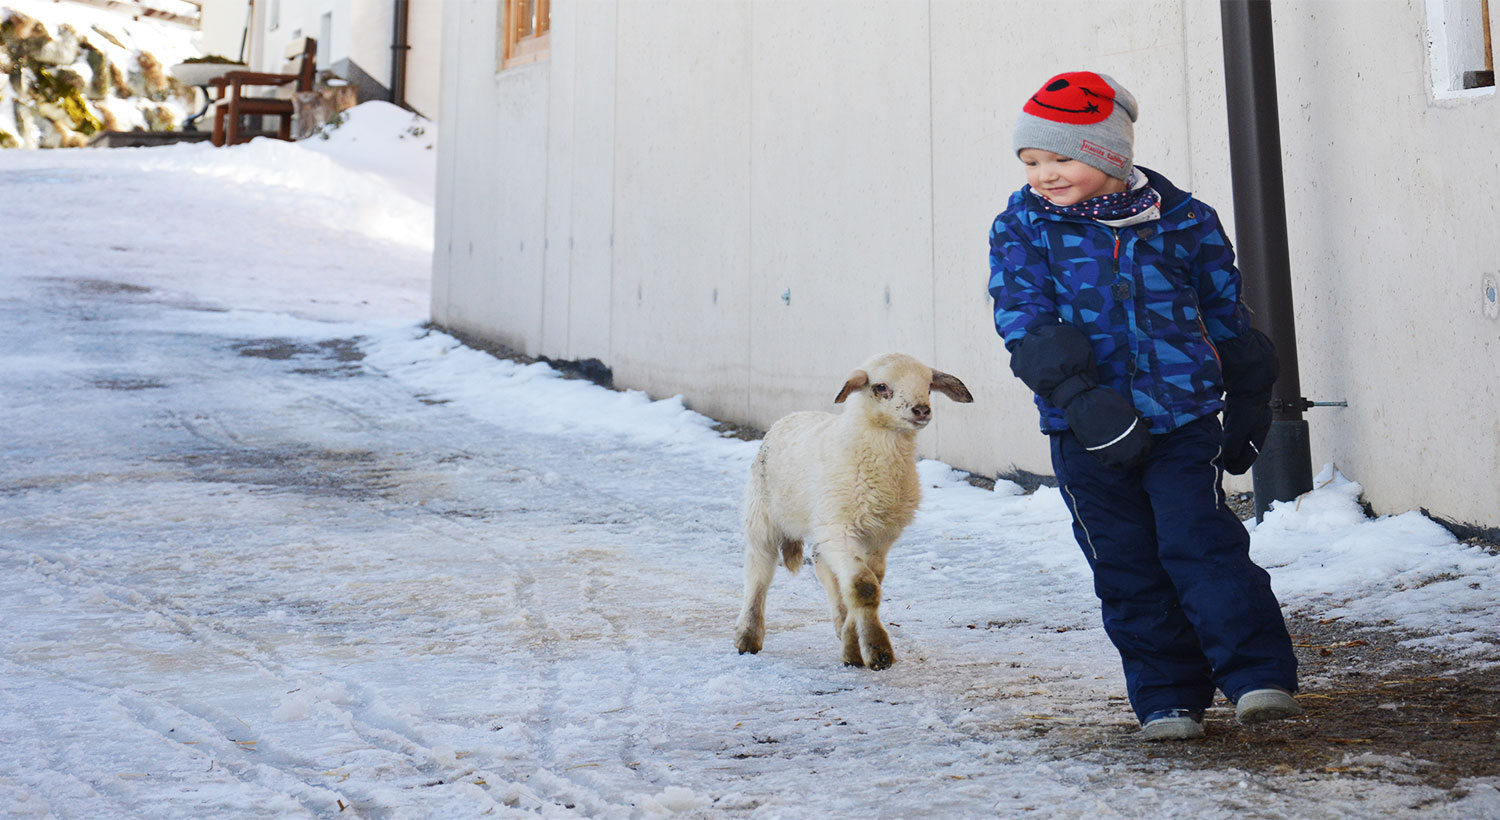 Kind und Schaf spielen